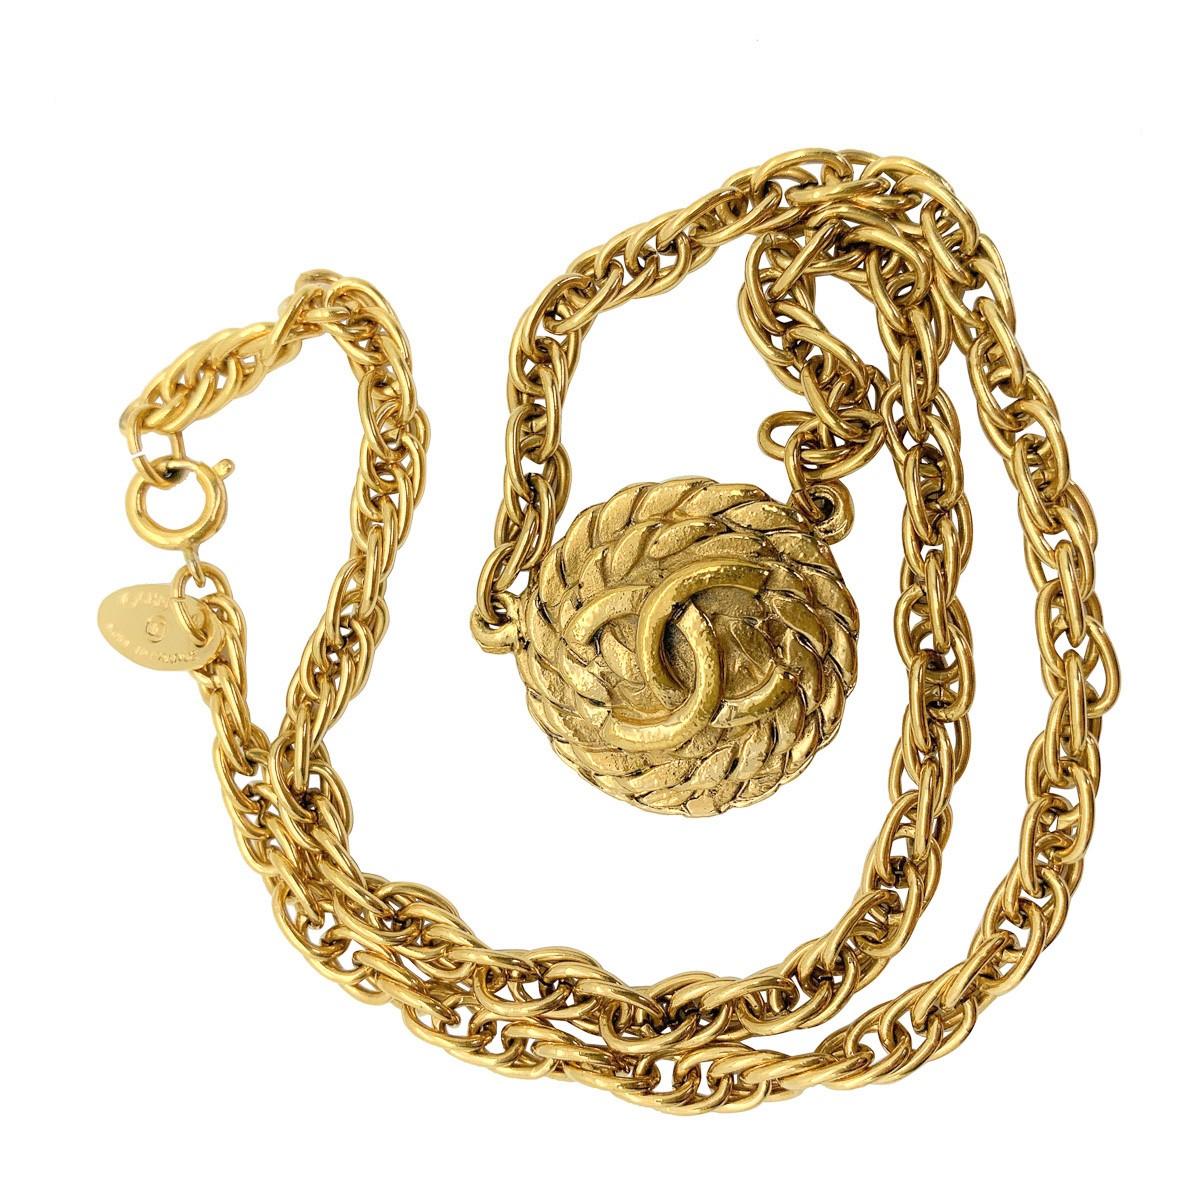 Eine ikonische Vintage-Halskette mit dem Logo von Chanel und den ikonischen ineinandergreifenden Cs auf einem gewundenen Seilmedaillon. Eingefasst in eine klobige Kette wird dieses Stück dank seines Erbes zweifellos die Blicke auf sich